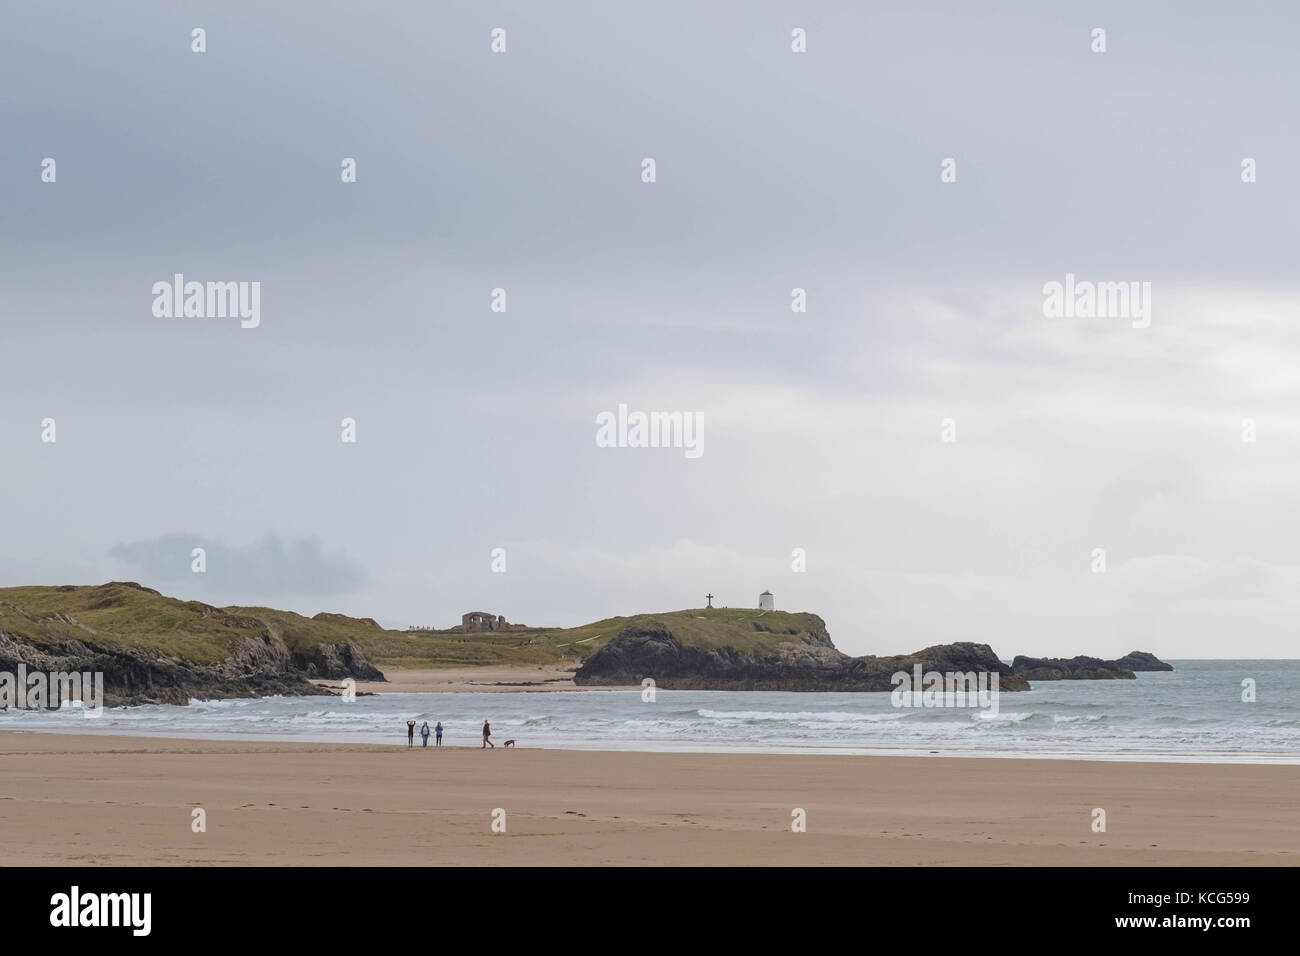 Famille et promenade de chiens au bord de la mer sur la plage de newborough, Isle of Anglesey, au nord du Pays de Galles, Royaume-Uni Banque D'Images